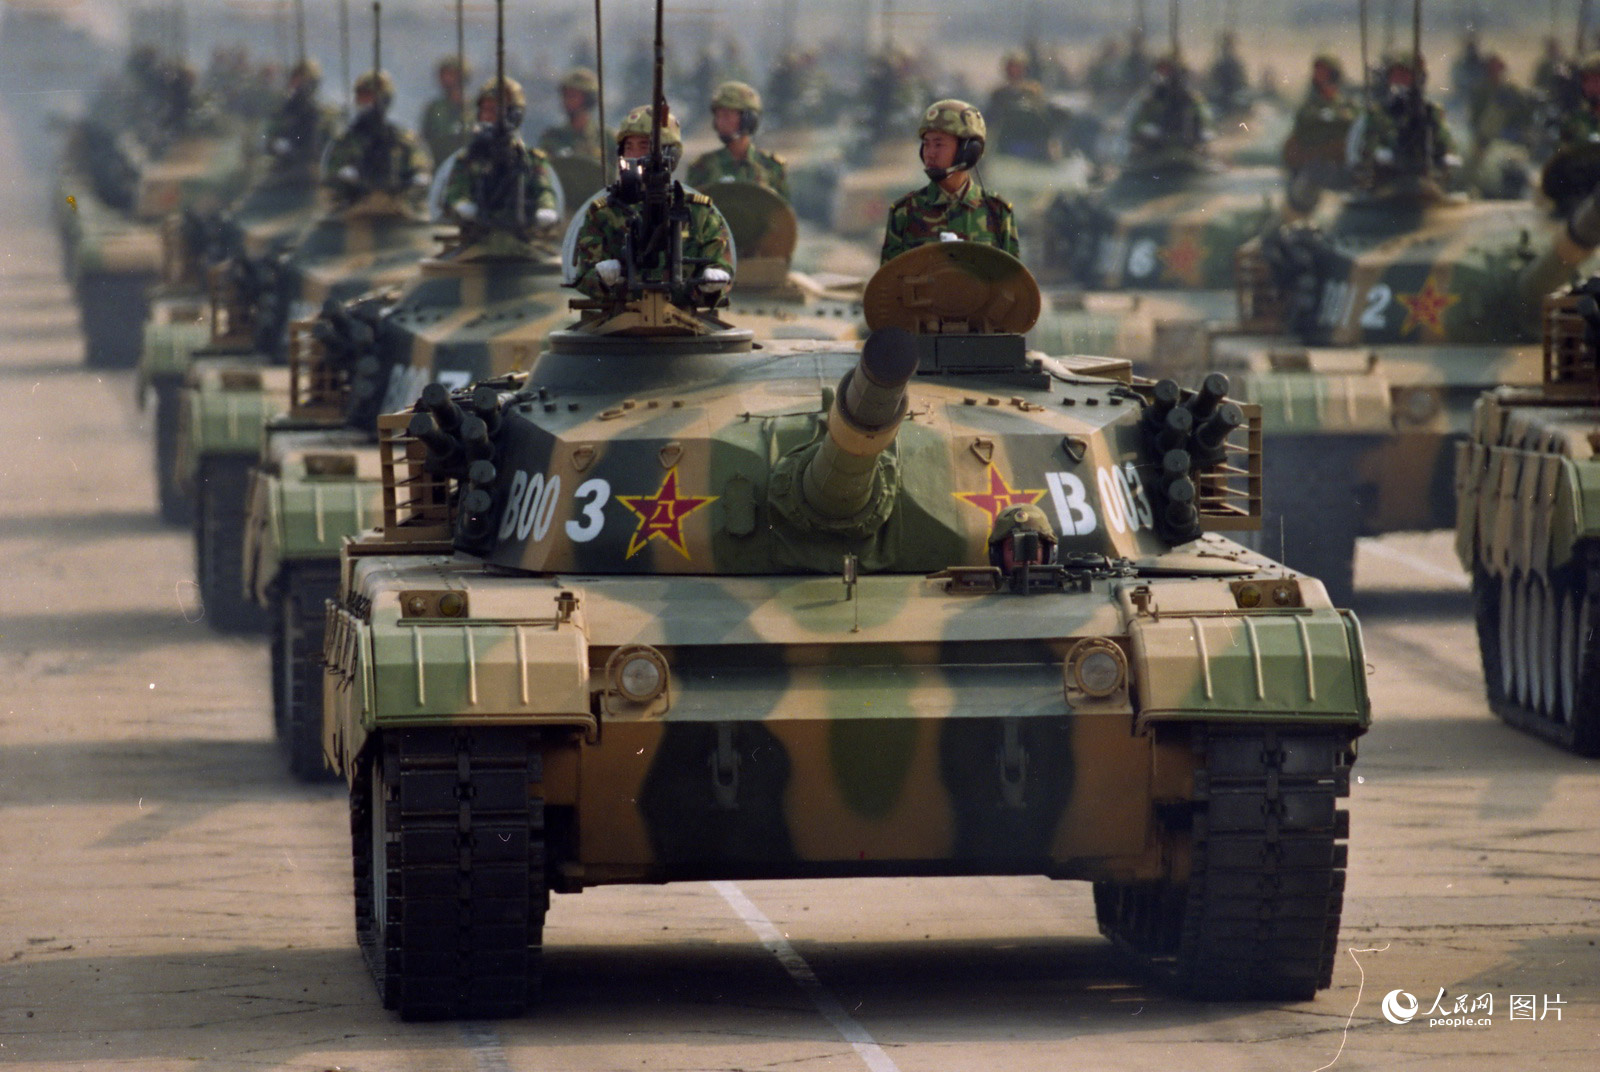 Galeria: parada militar celebrou 50º aniversário da fundação da Nova China (1999)